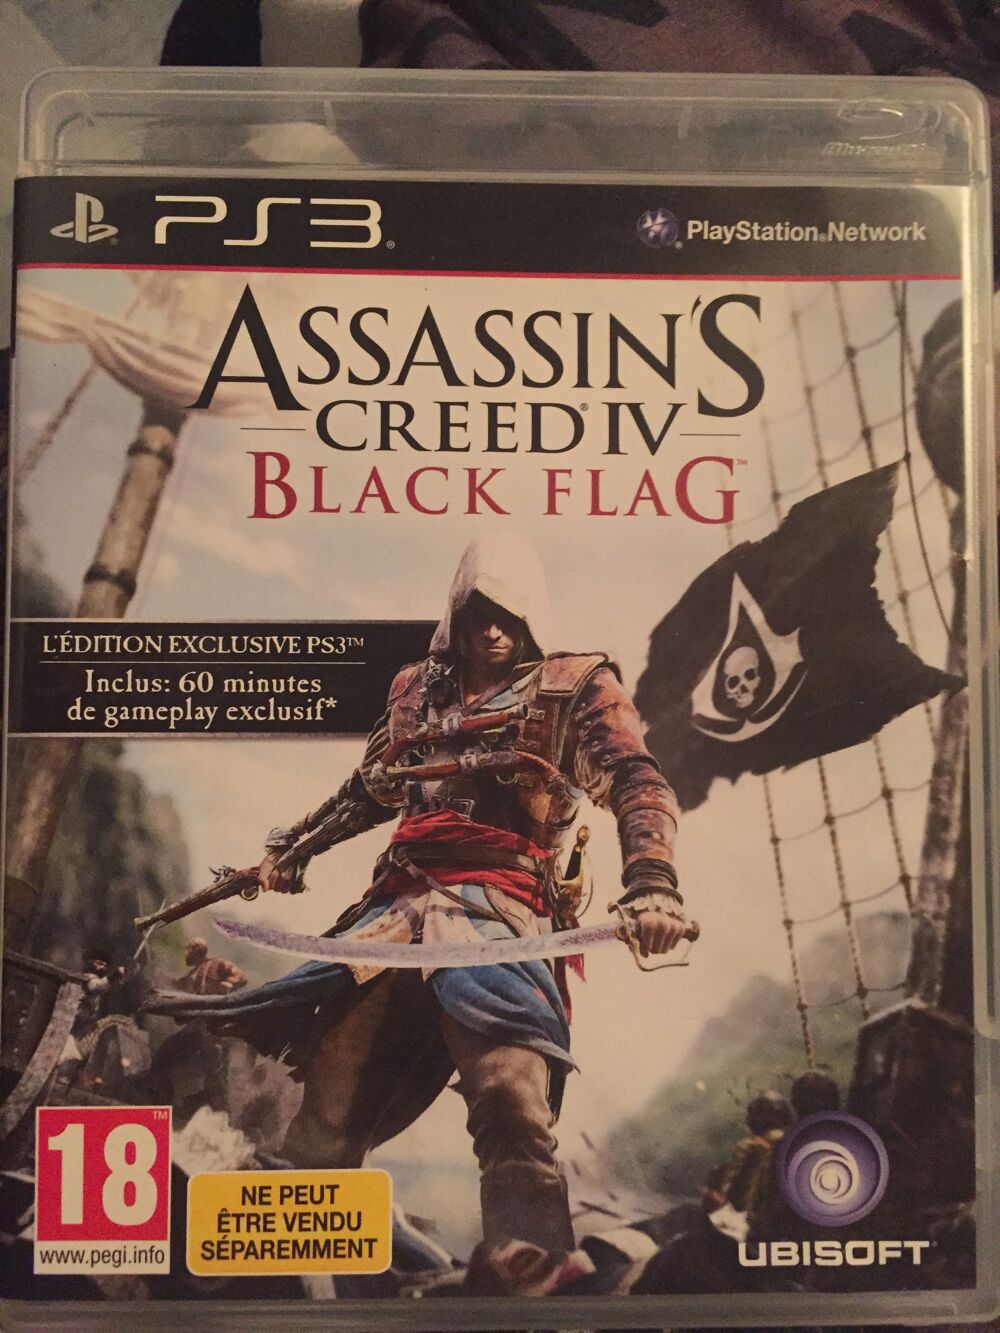 Jeu PS3 Assassin's Creed IV Black Flag Consoles et jeux vidos